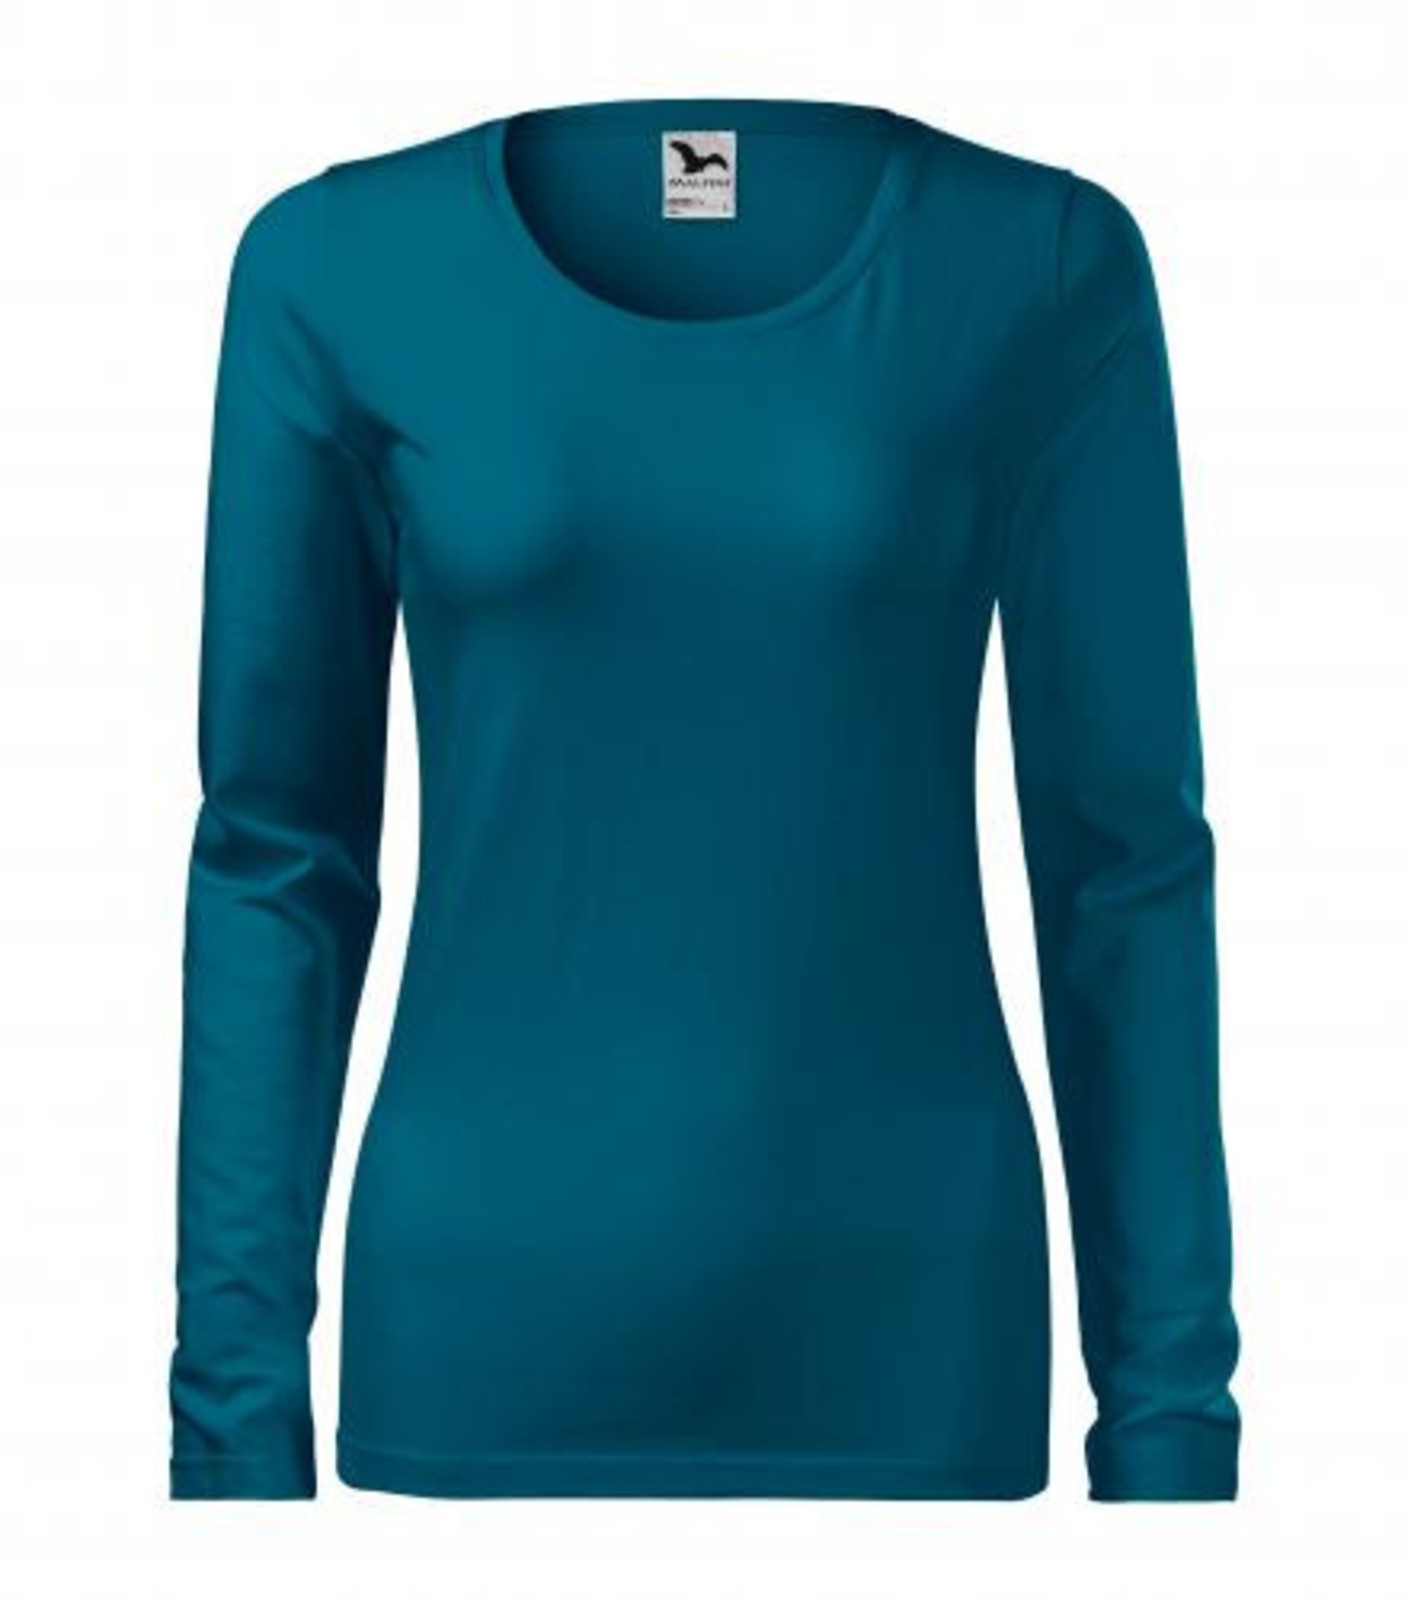 Dámske tričko s dlhým rukávom Adler Slim 139 - veľkosť: XS, farba: petrolejová modrá